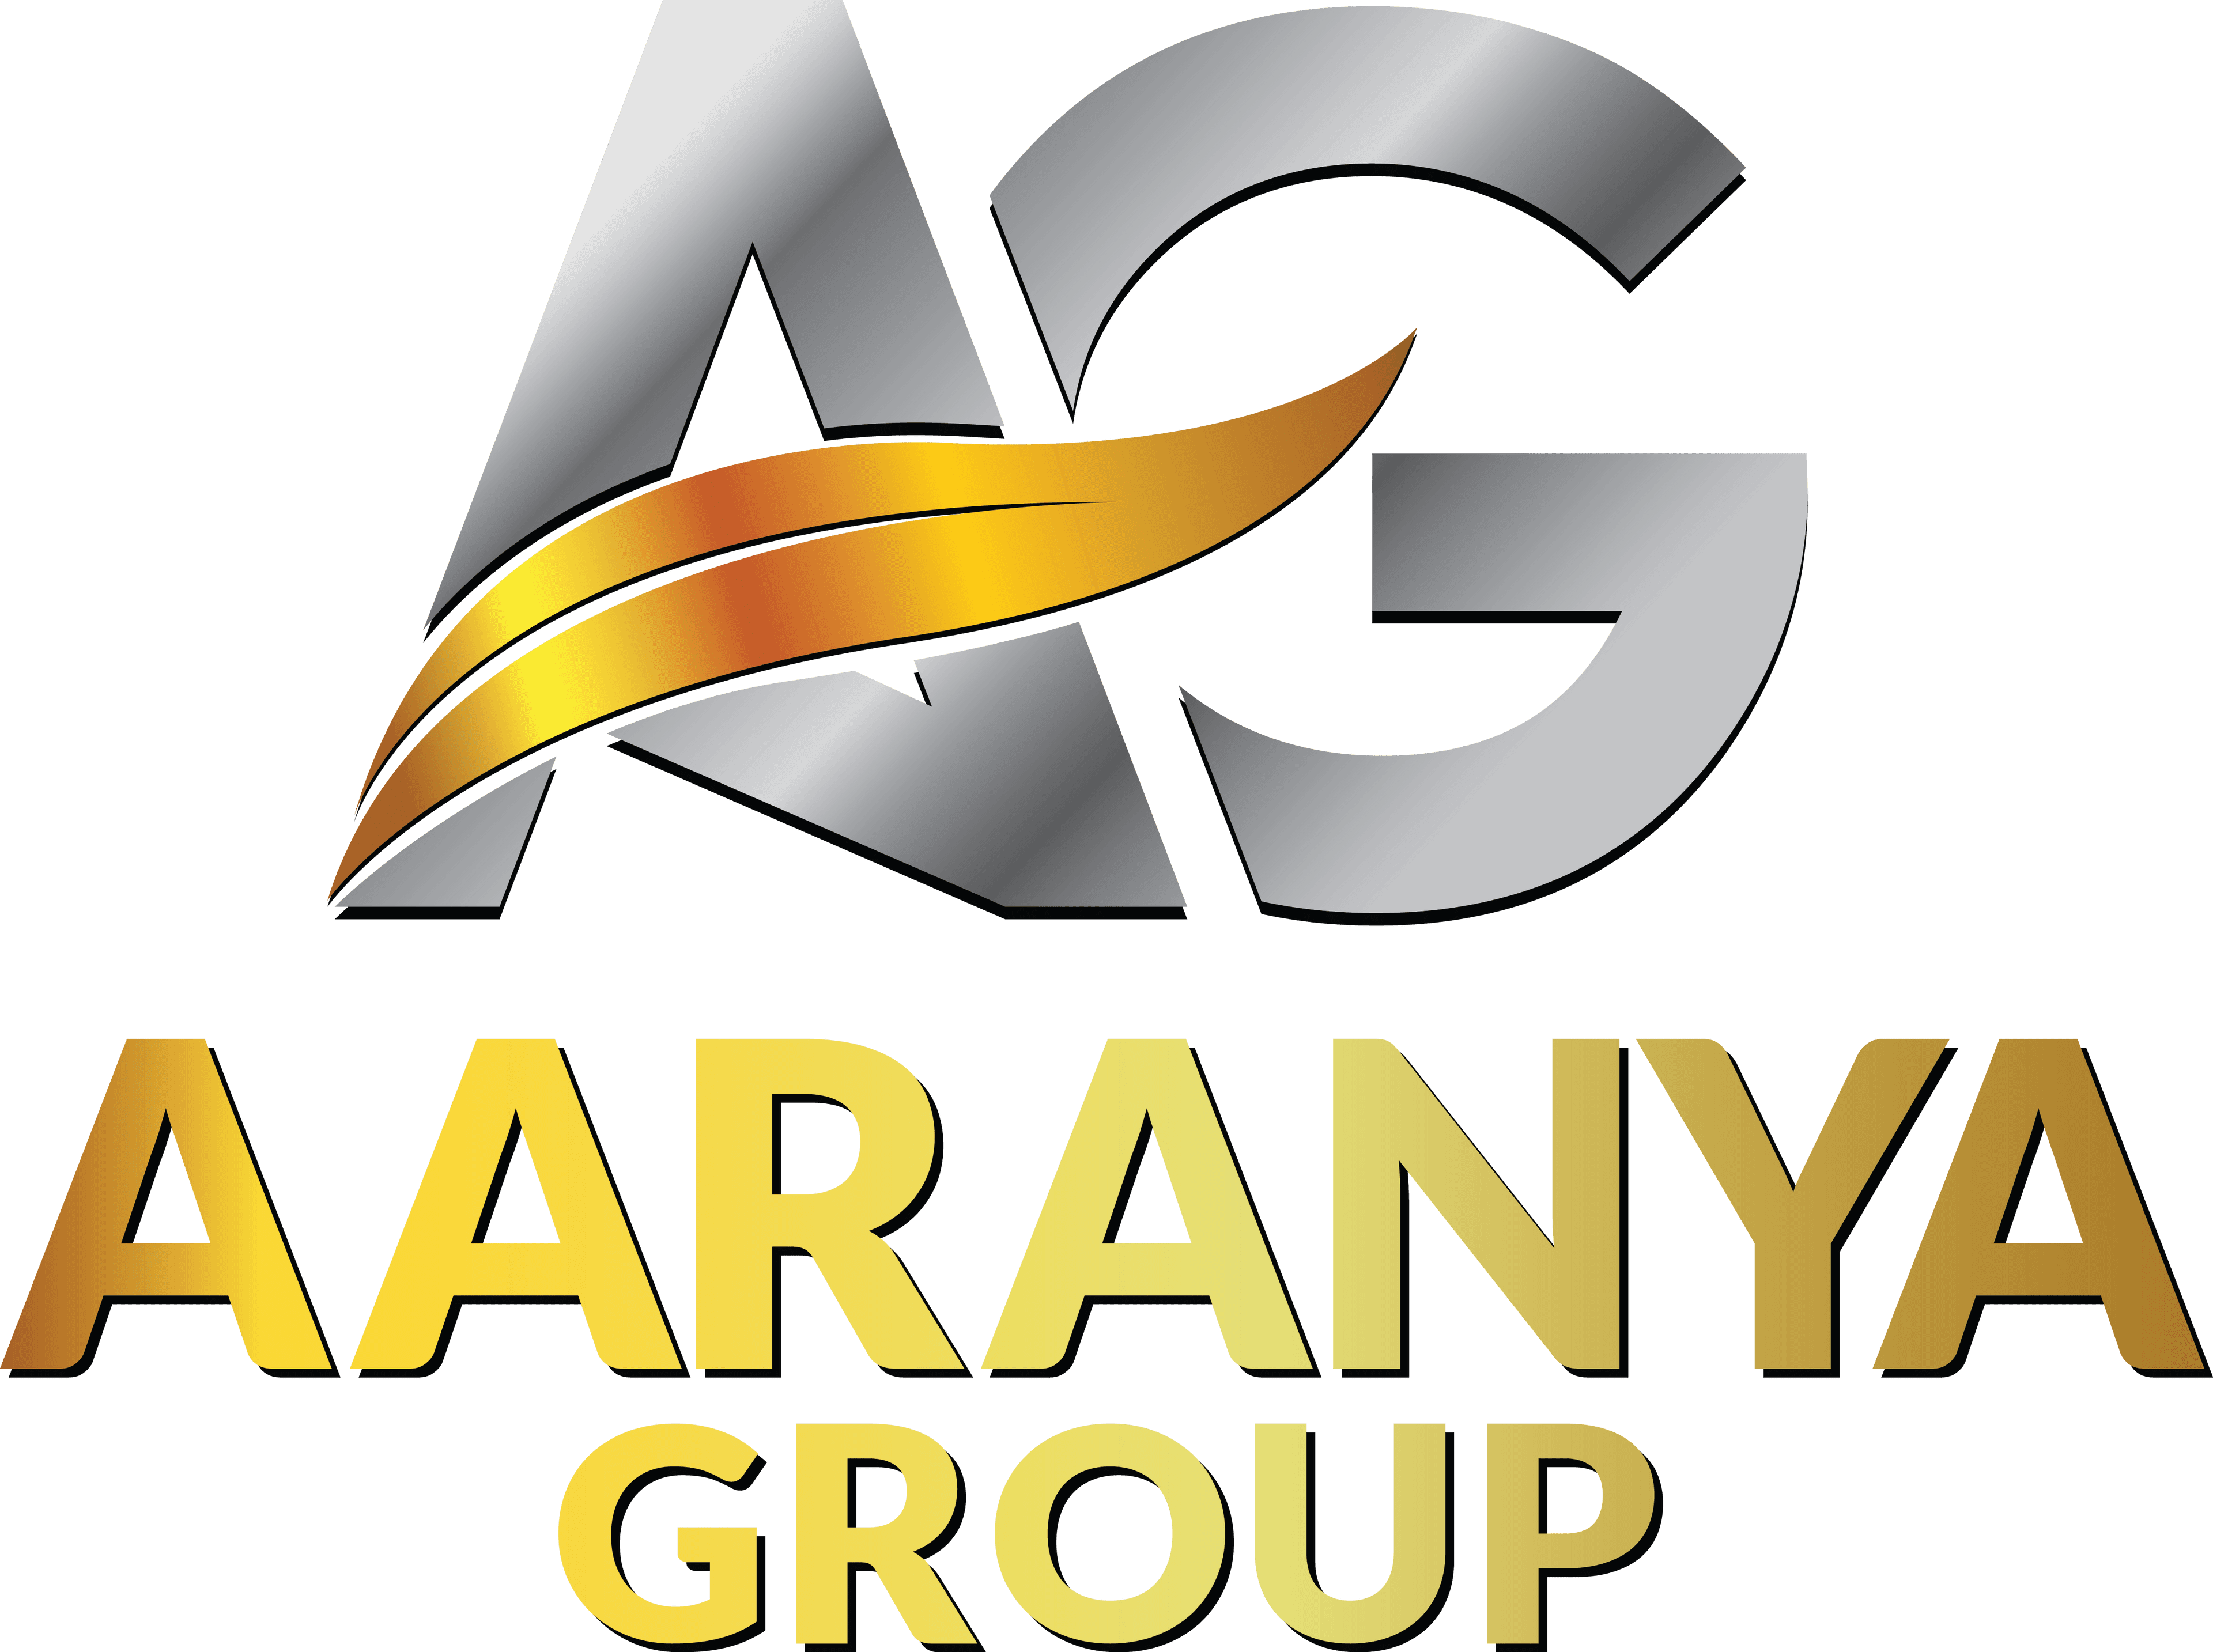 Aaranya Group